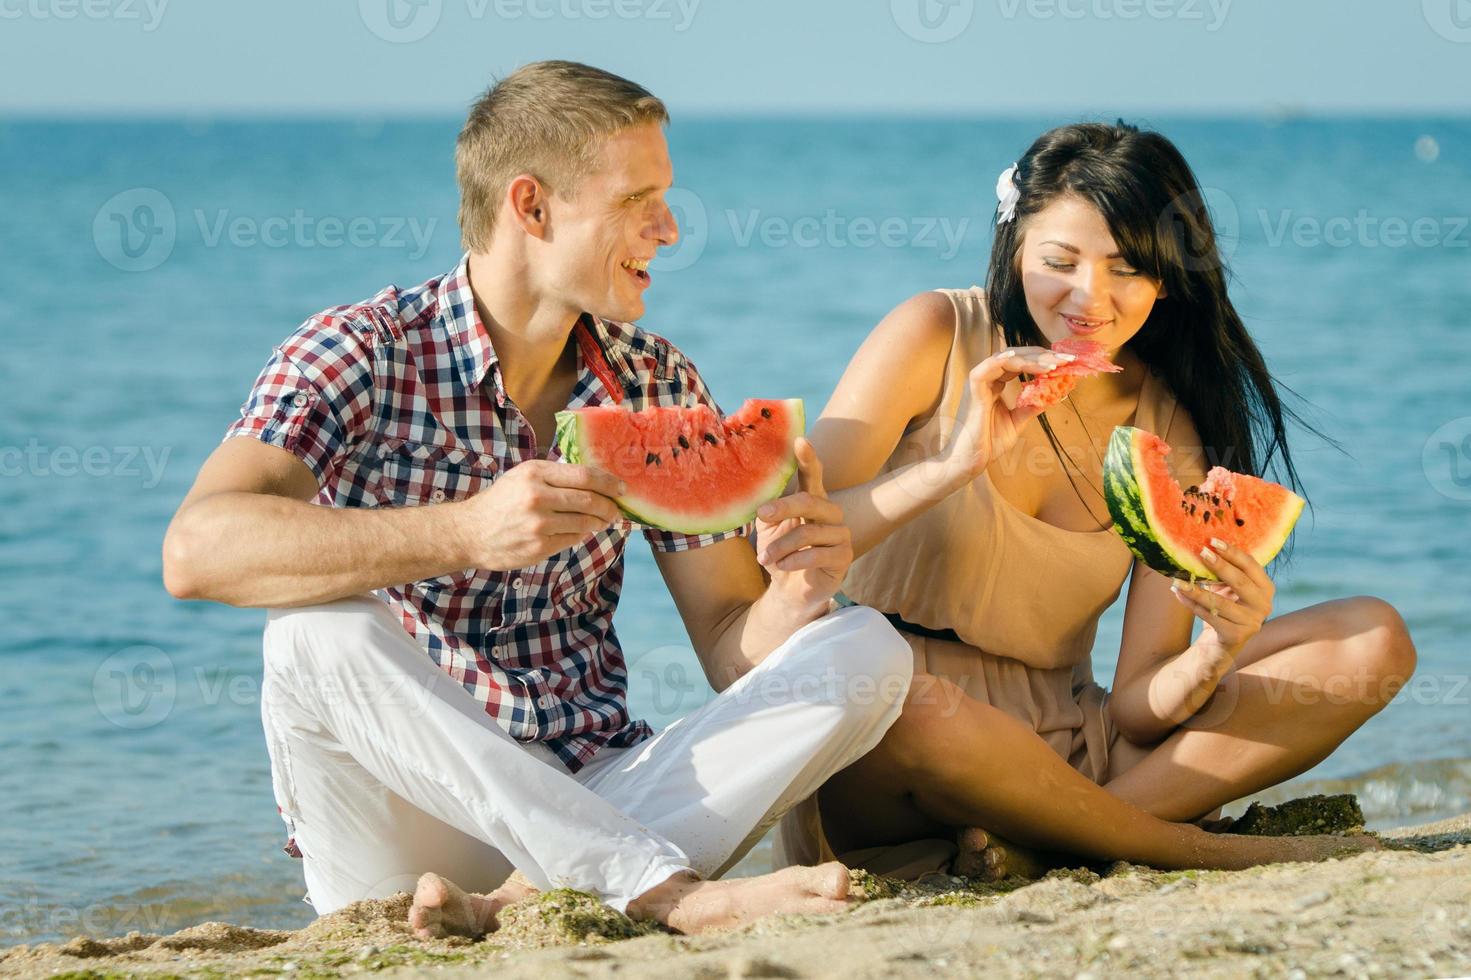 jongen en een meisje aan de kust die een rijpe watermeloen eten foto